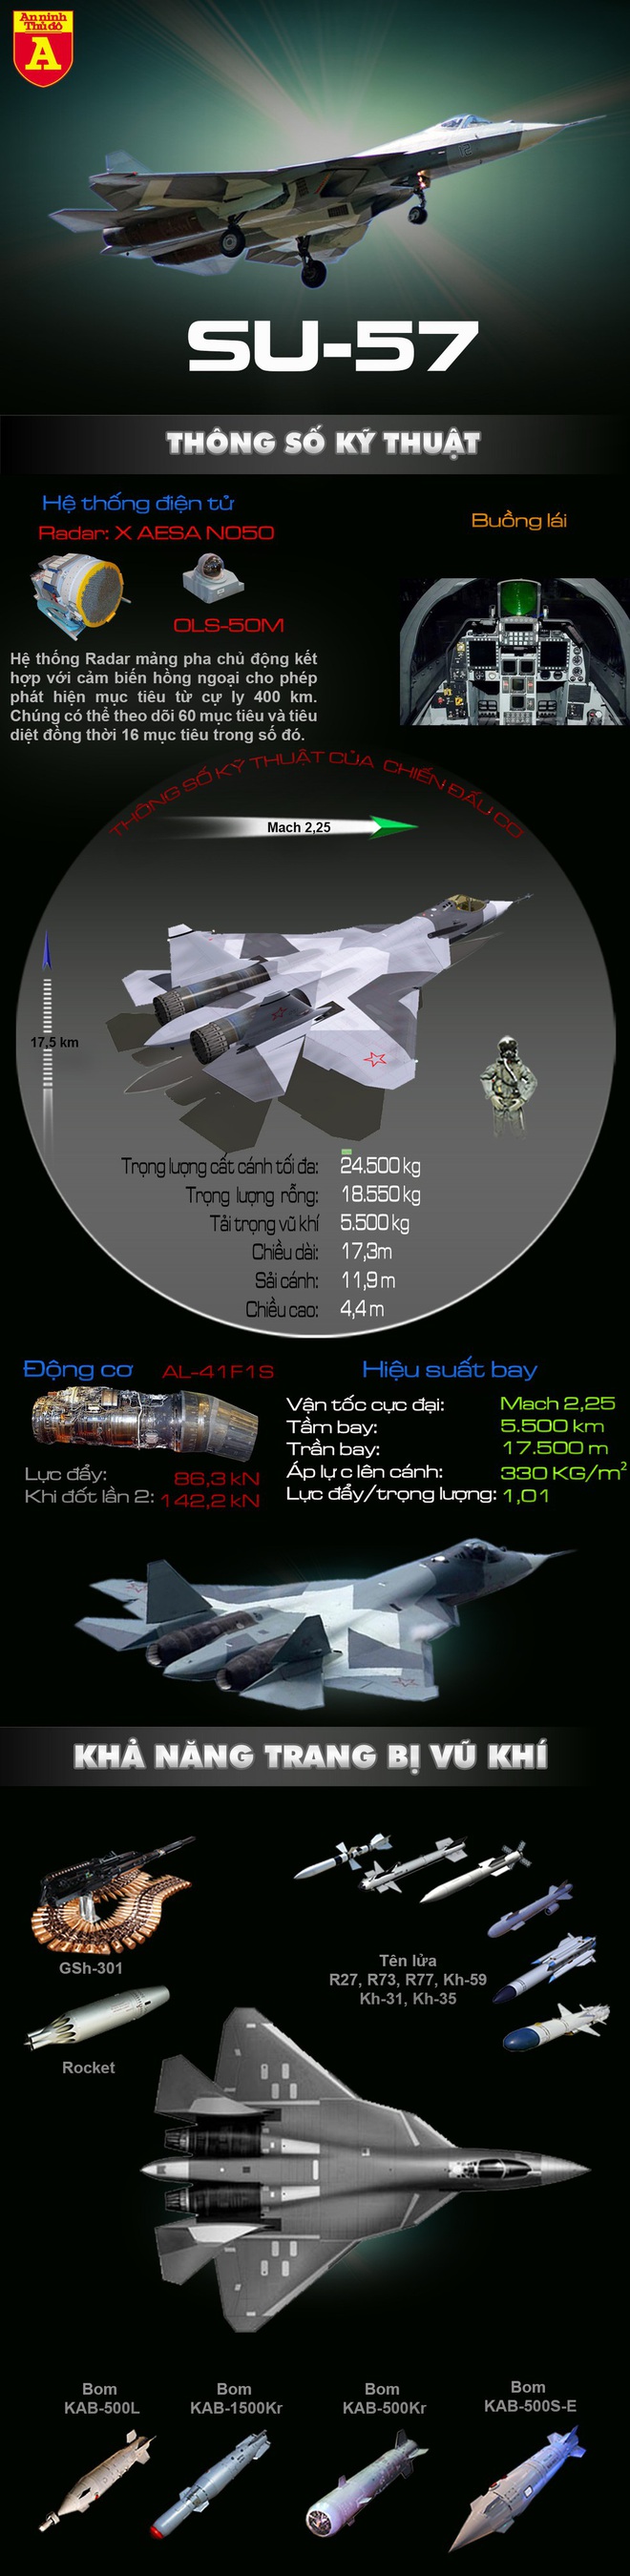 Giá Su-57E cao gấp 3 lần F-35, nhưng khách vẫn sẽ đổ tới mua vì sao? - Ảnh 2.